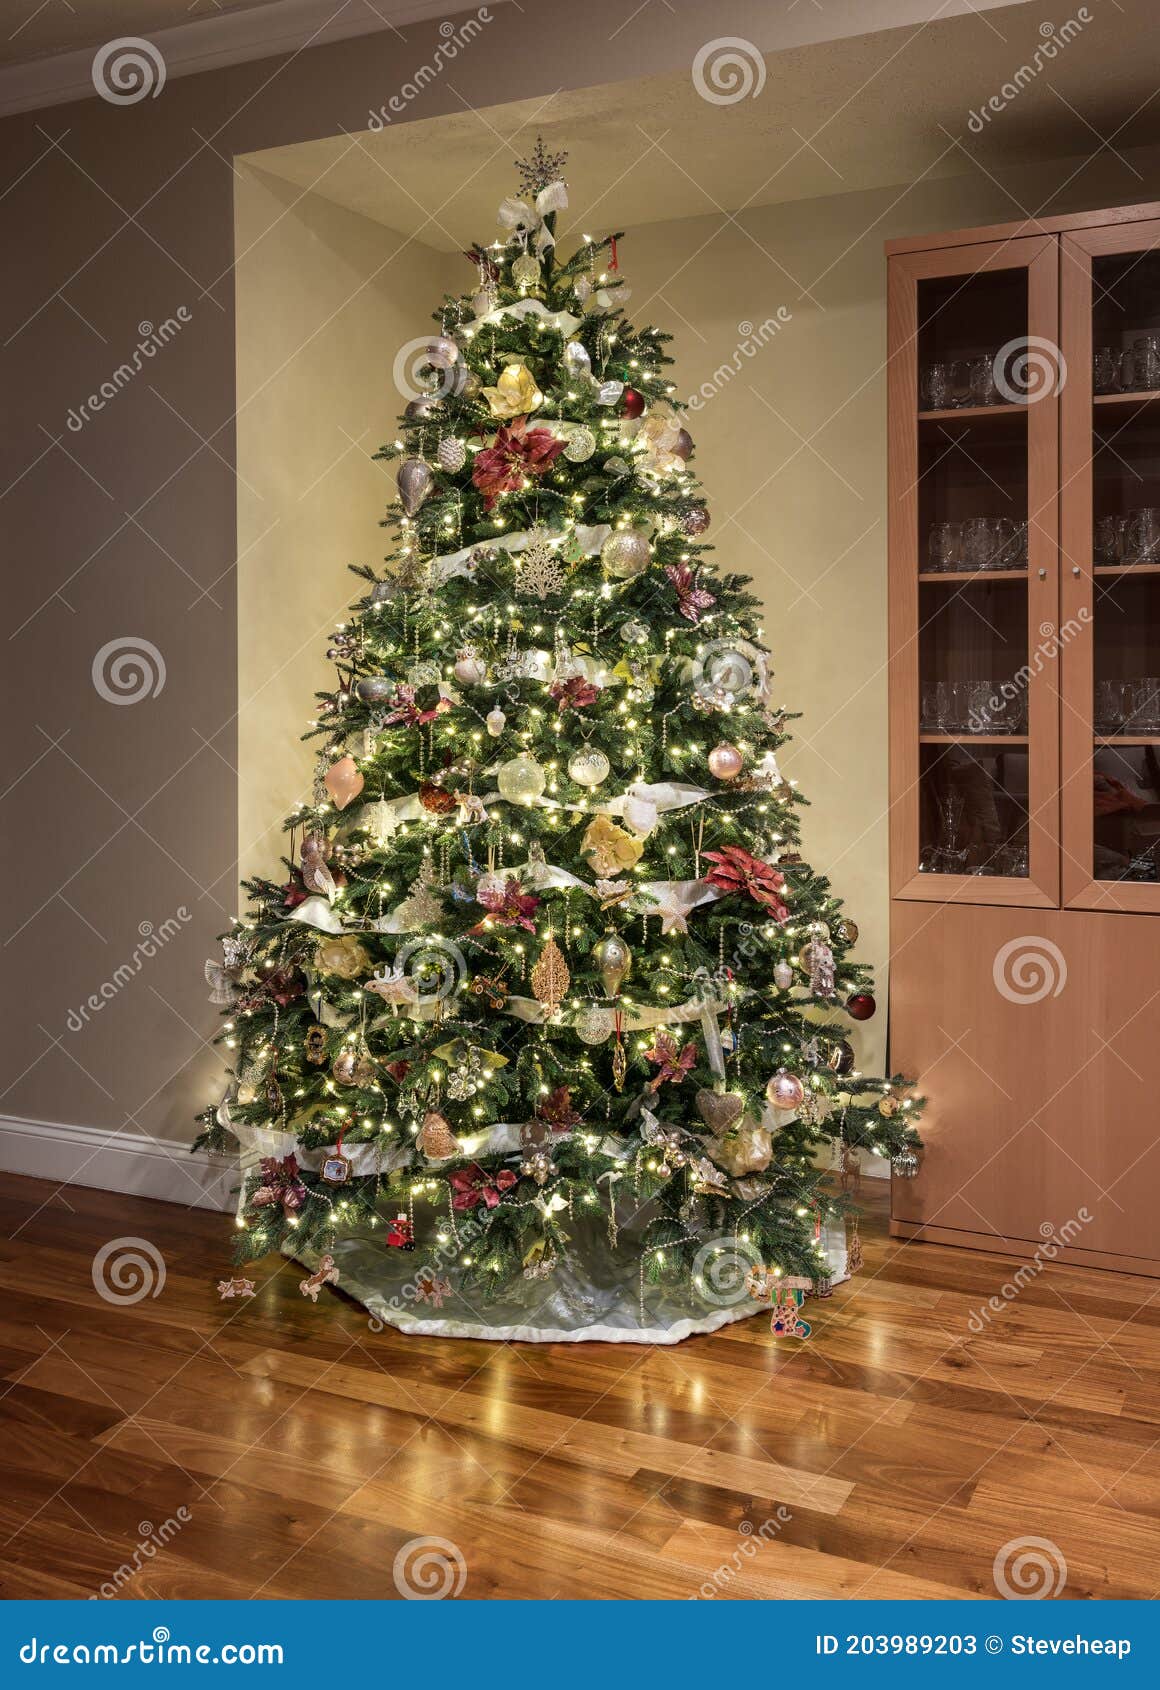 árvore De Natal Decorada De Forma Decorada No Canto De Uma Sala De Família  Moderna Imagem de Stock - Imagem de dezembro, bausolas: 203989203